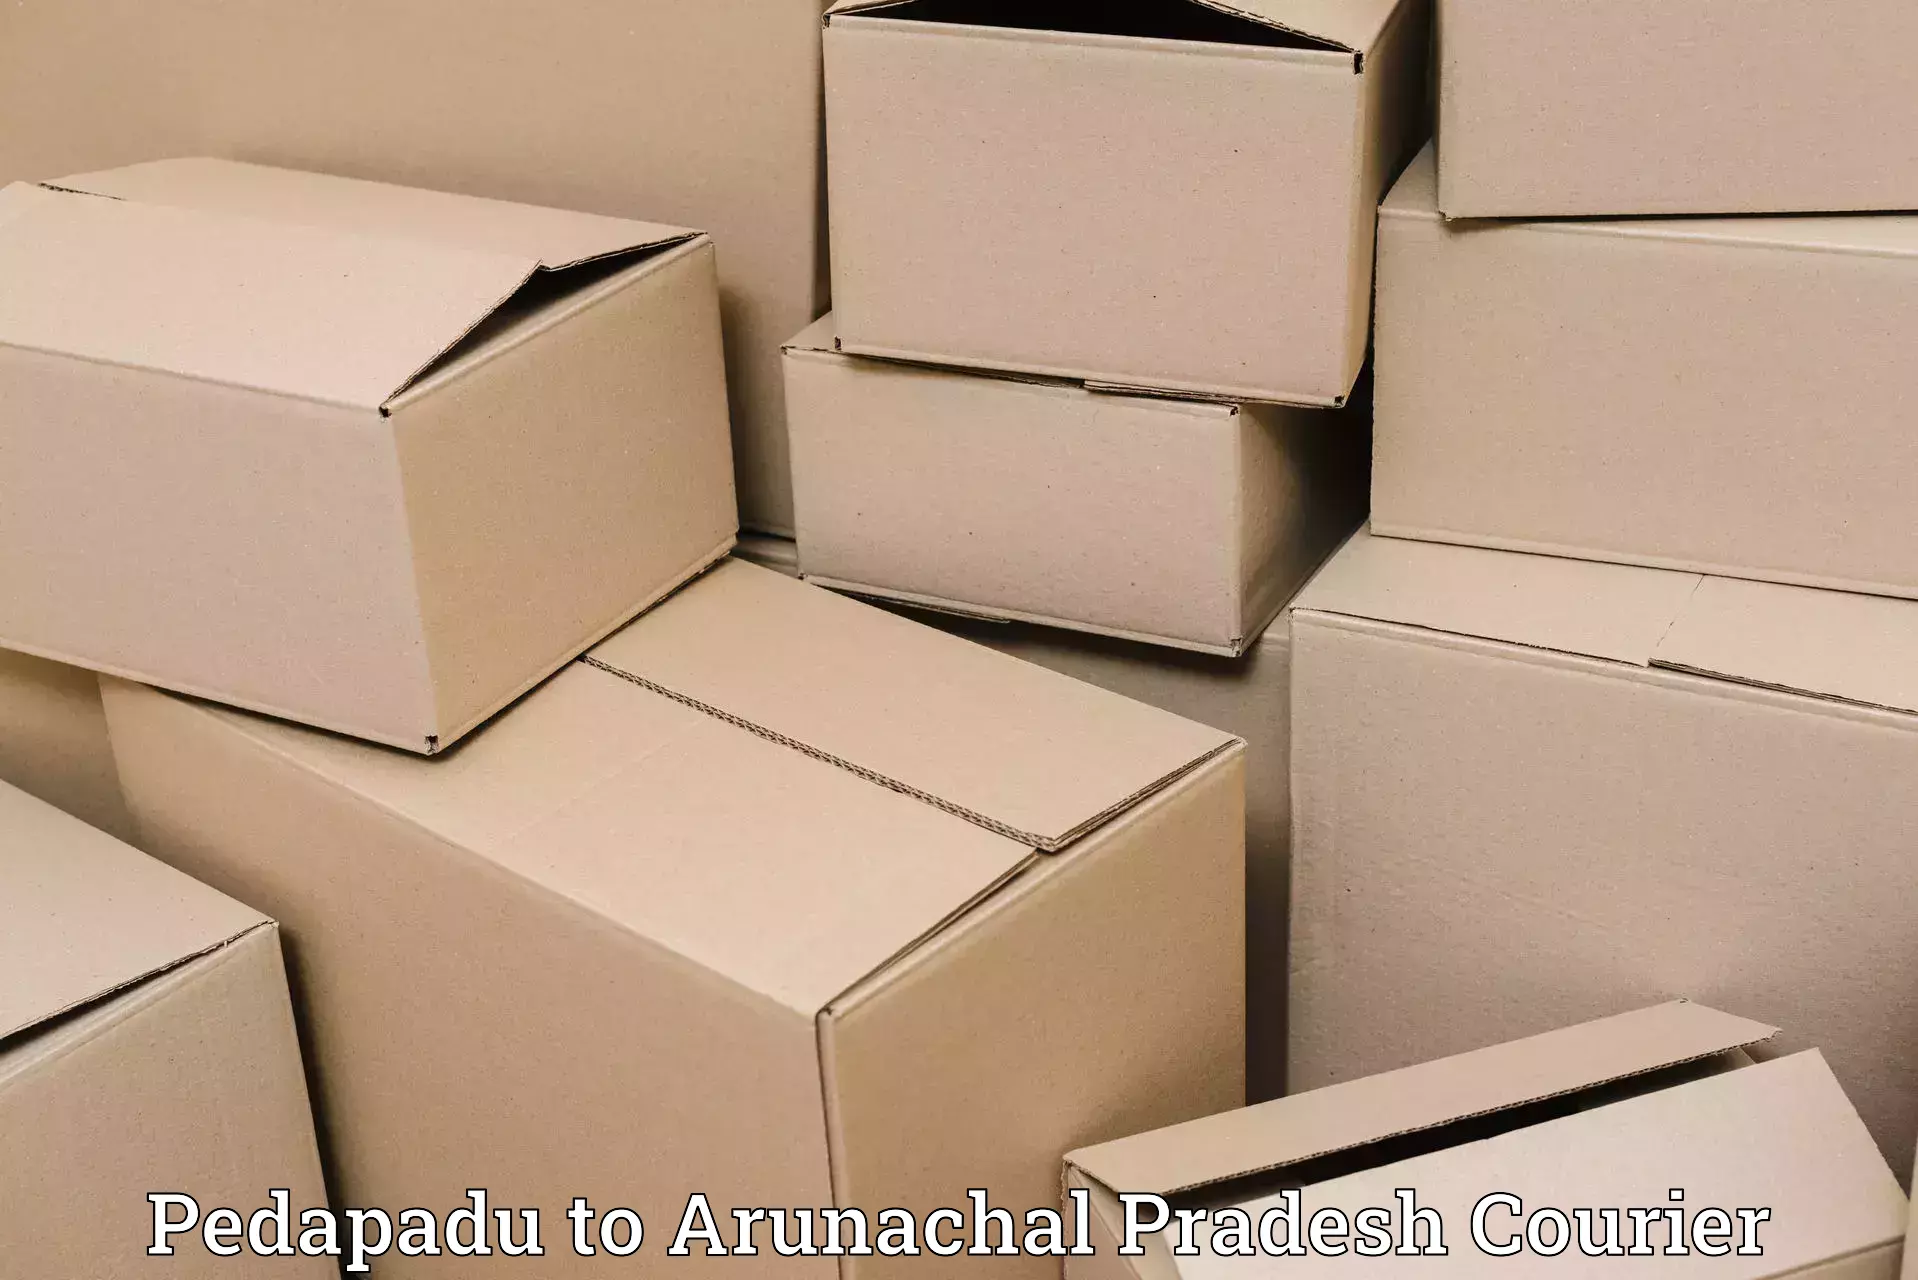 Next-day freight services in Pedapadu to Arunachal Pradesh